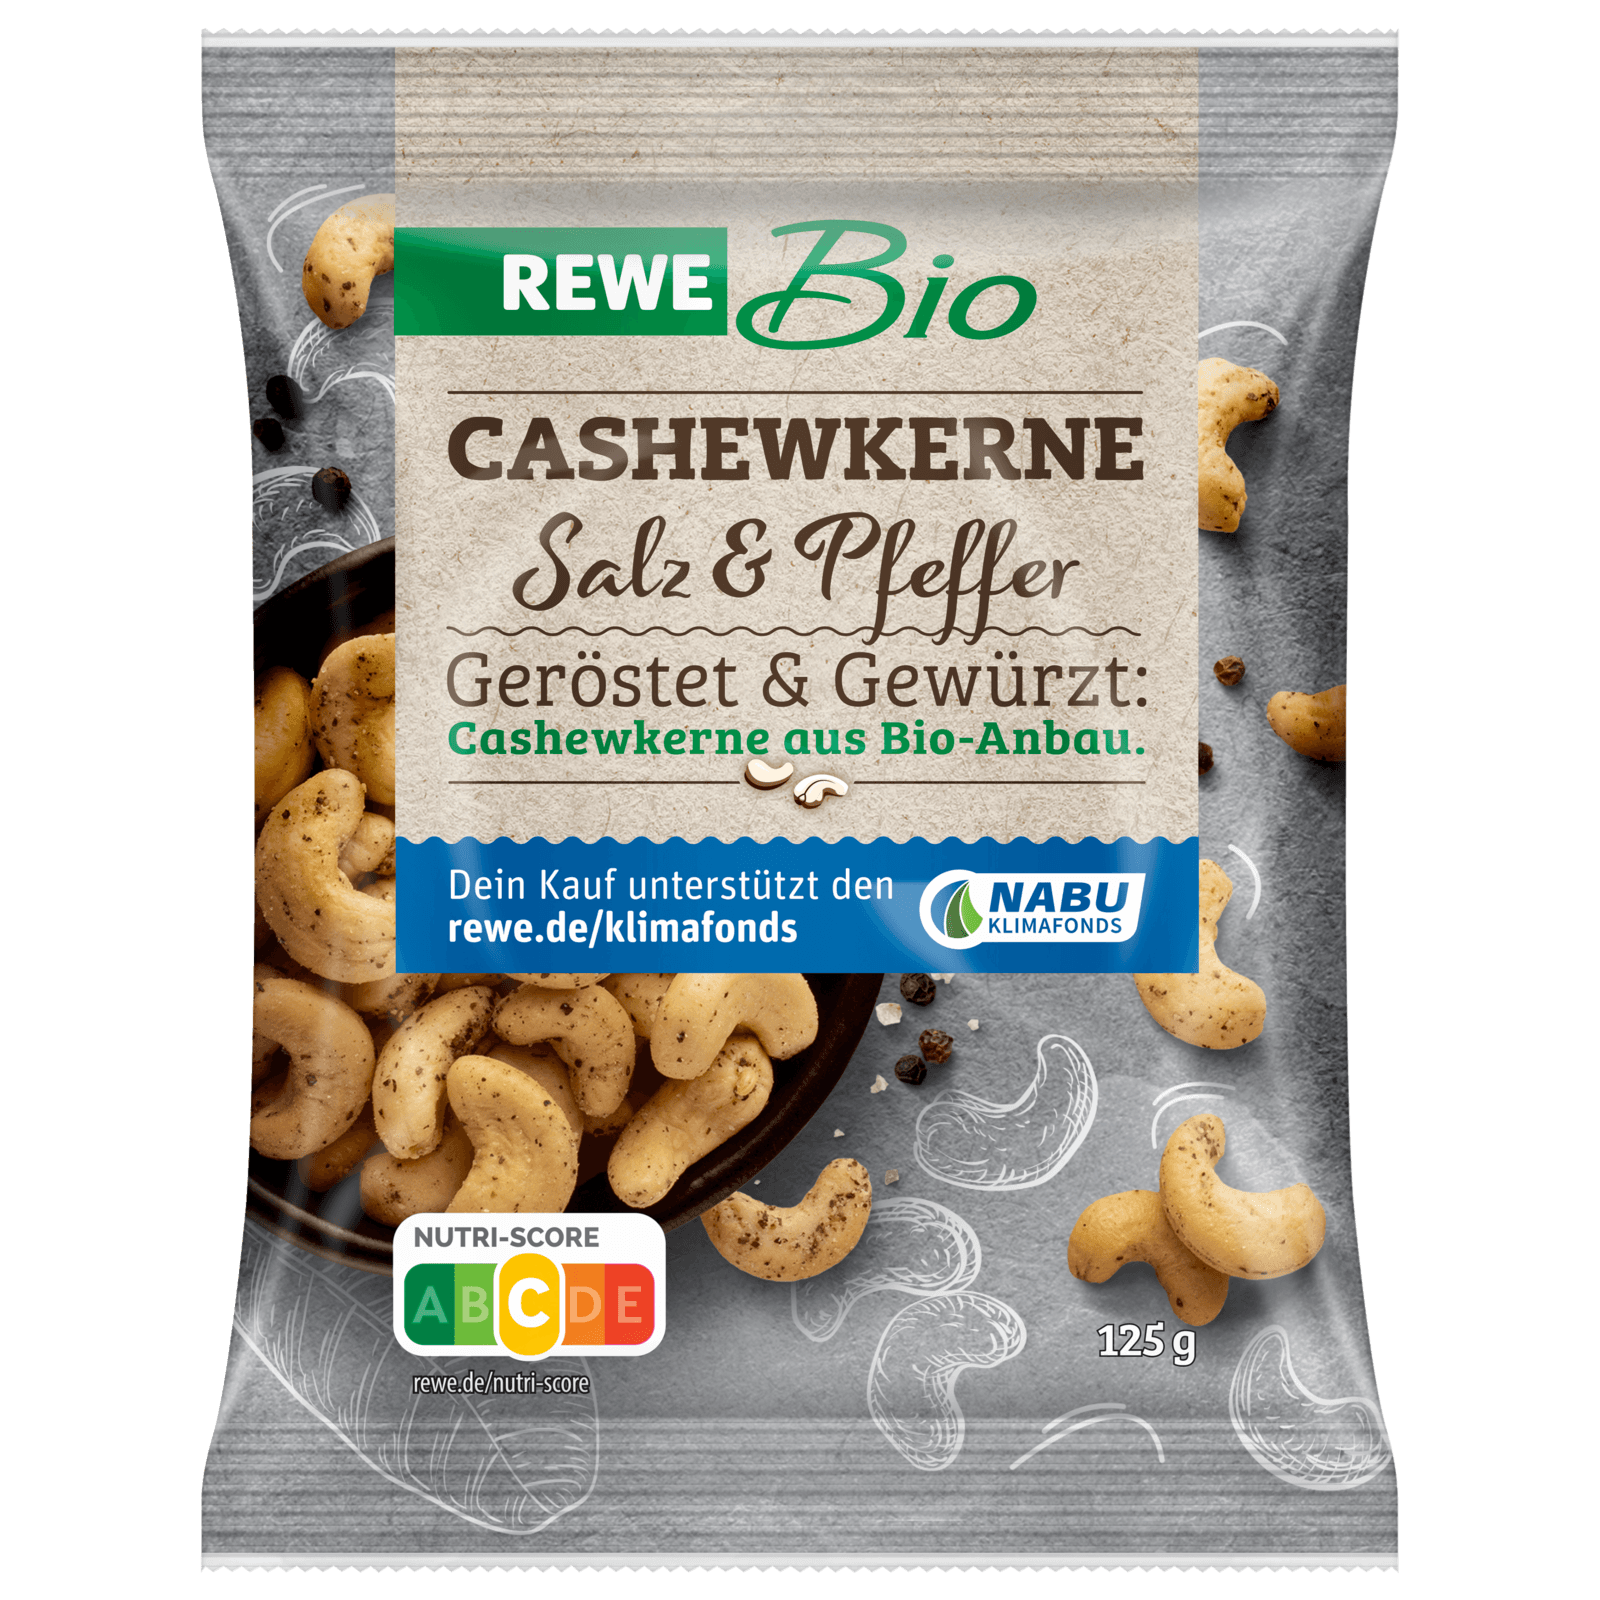 REWE Bio Cashewkerne Salz & Pfeffer geröstet 125g